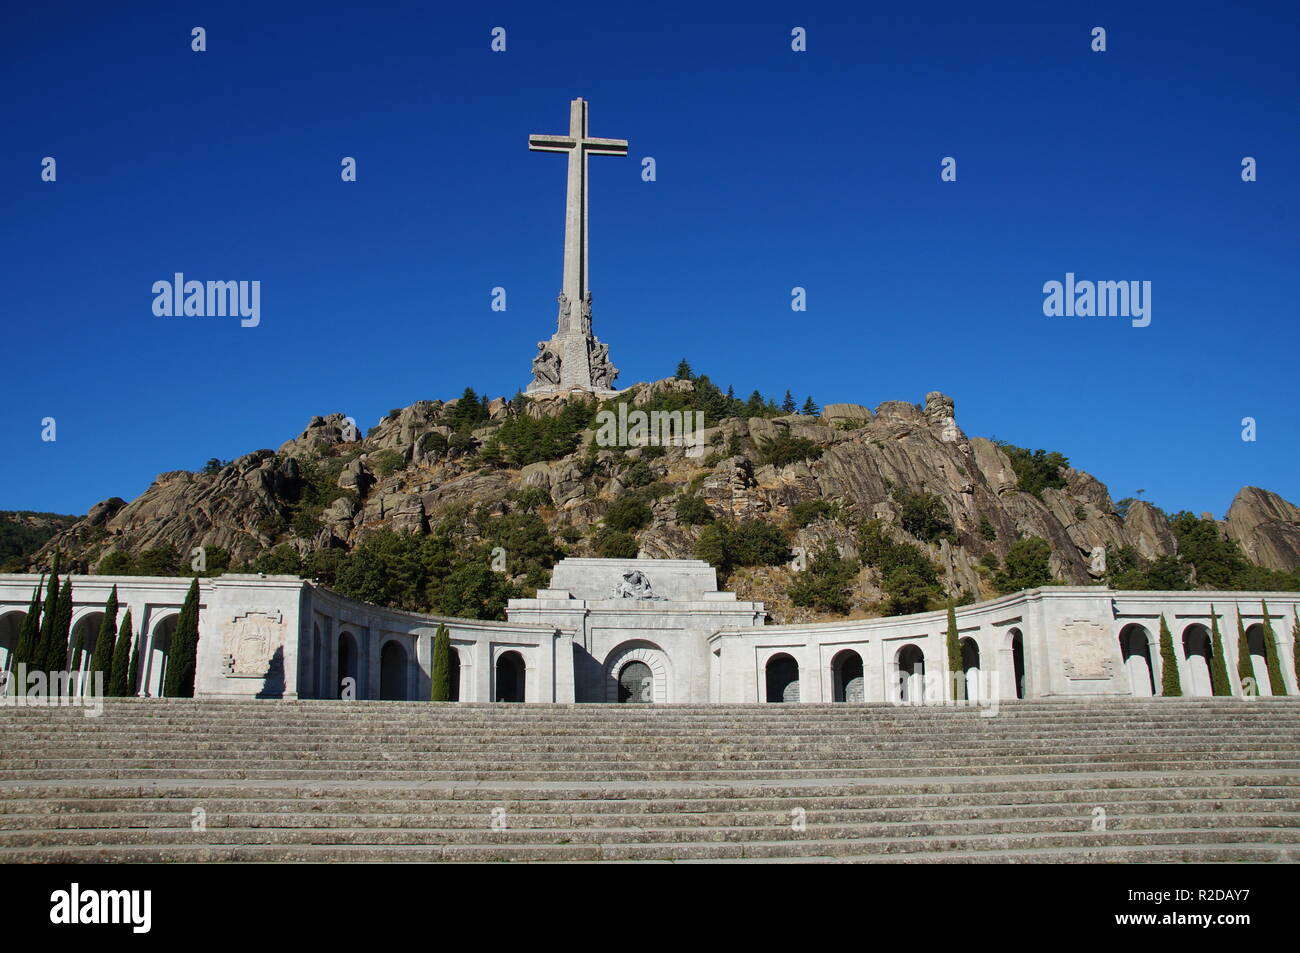 04 Oktober 2018, Spanien, El Escorial: Eine 155 Meter hohe und 44 Meter breite konkrete Kreuz steht auf dem Berg Risco de la Nava im Valle de los Caídos (Tal der Gefallenen) ca. 60 Kilometer nordwestlich von Madrid. Im Denkmal in der Sierra de Guadarrama ist das Grab des spanischen Diktators Franco. Drei Tage nach seinem Tod, wurde er in der Basilika am 23. November 1975 begraben. Das Mausoleum, das in den Felsen von 20.000 Zwangsarbeiter zwischen 1940 und 1959 vertrieben wurde, gilt als eine der größten der Welt. Es ist das wichtigste architektonische Symbol der Francos Diktatoren Stockfoto